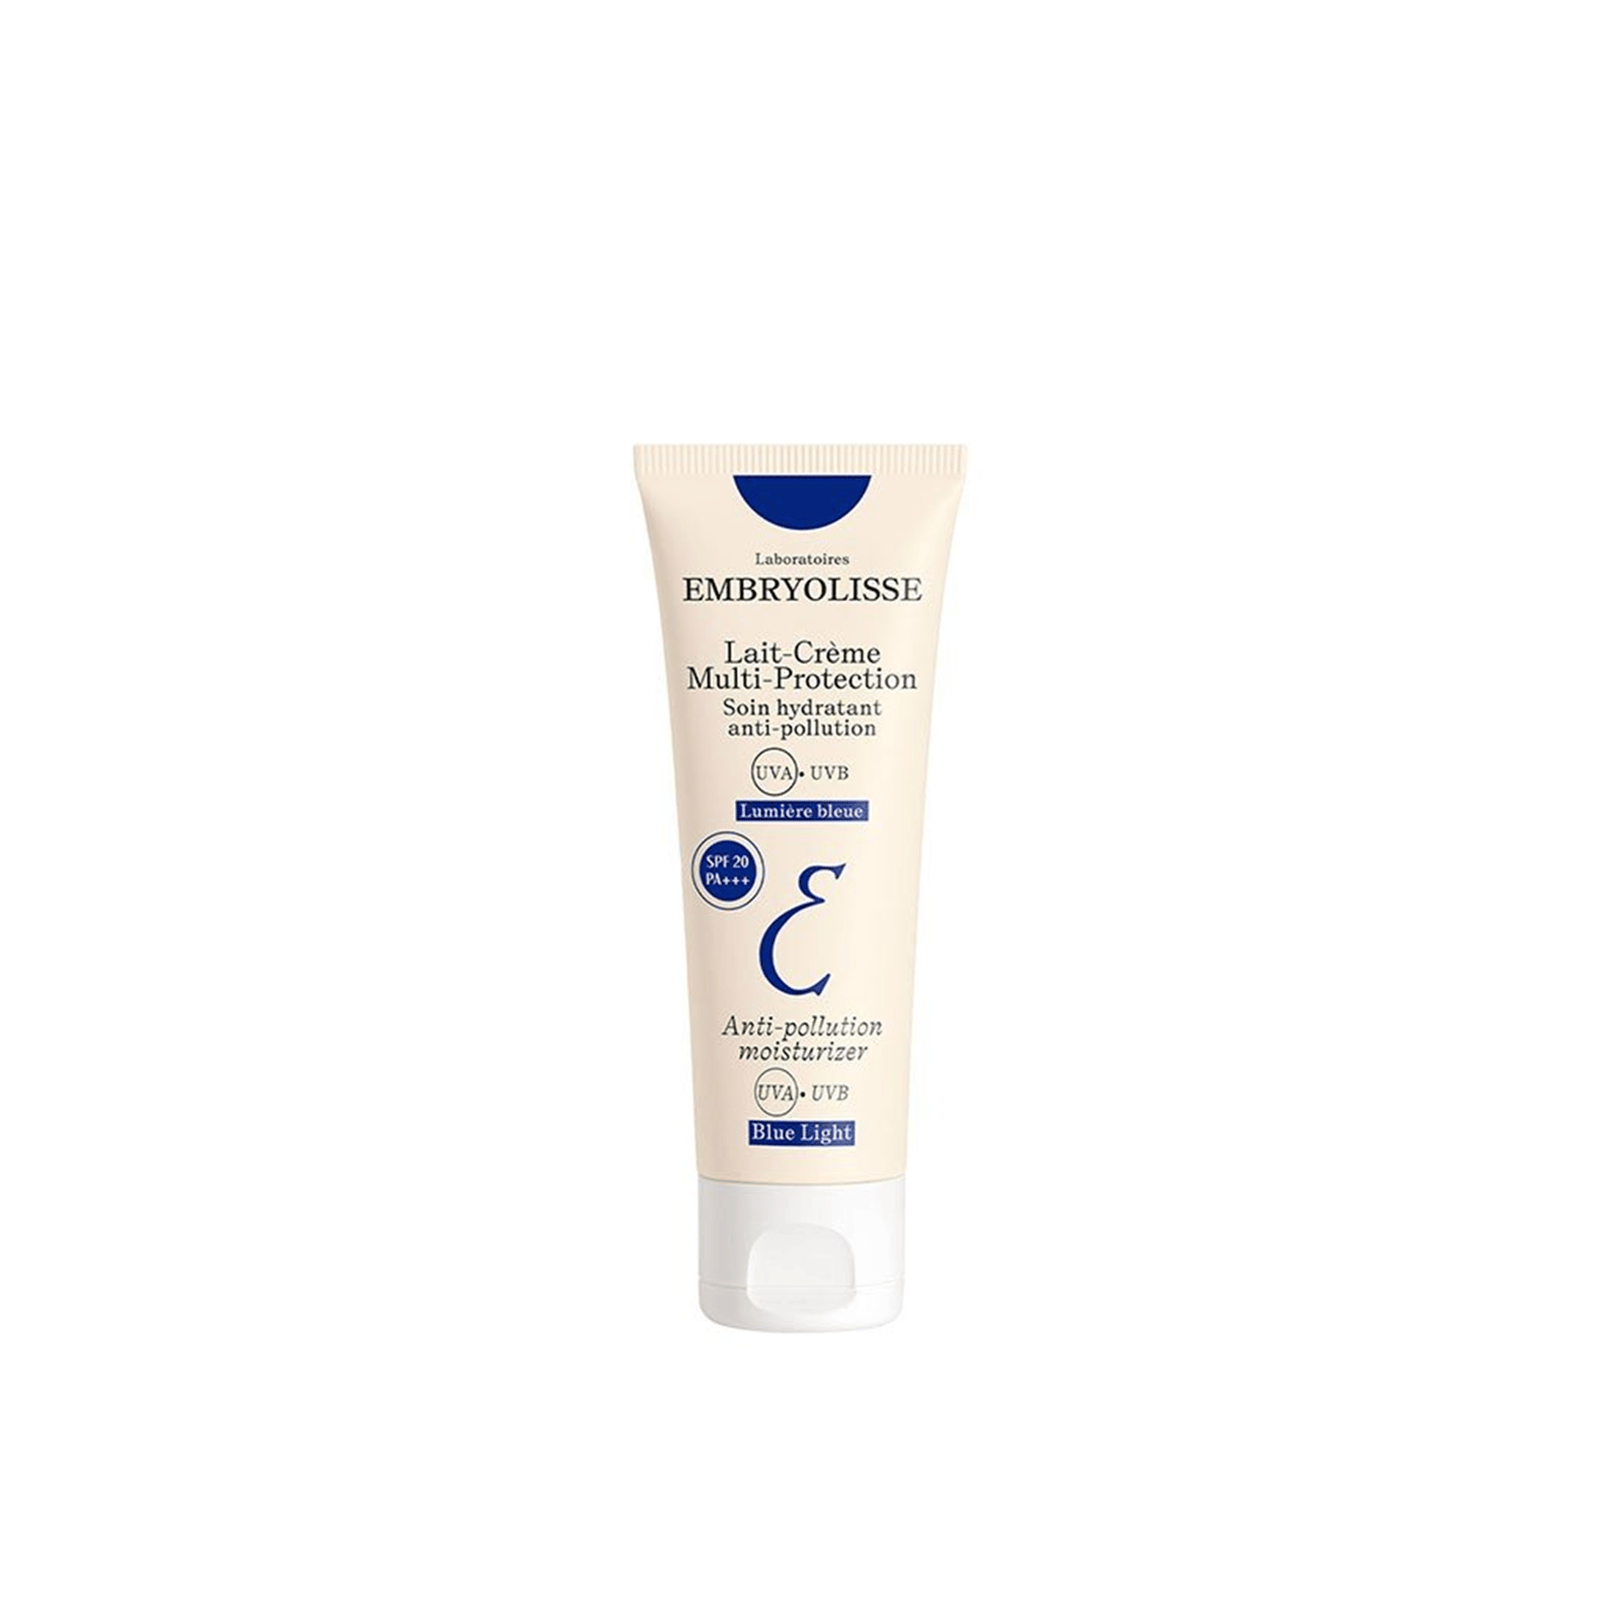 Embryolisse Lait-Crème Multi-Protection SPF20 40ml